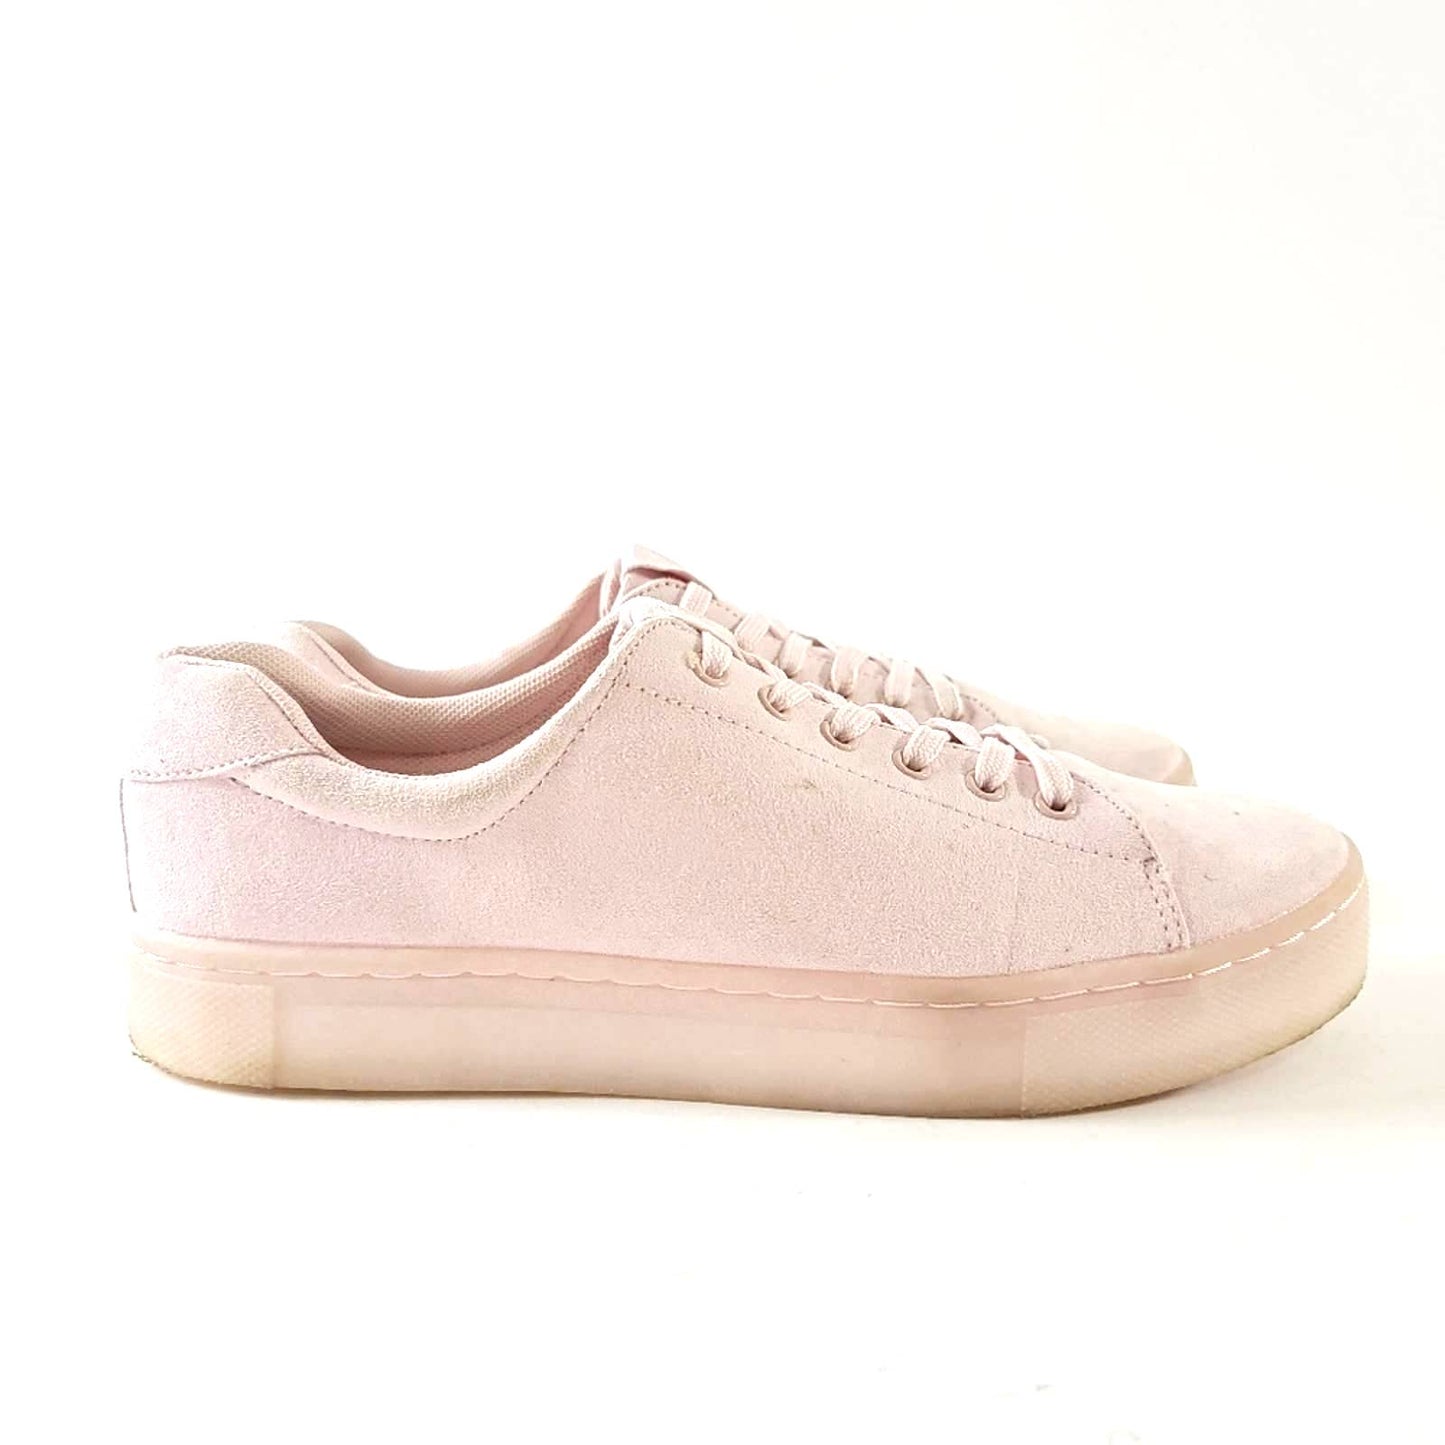 H&M Chunky Platform  Rose Pink Sneakes - 9.5